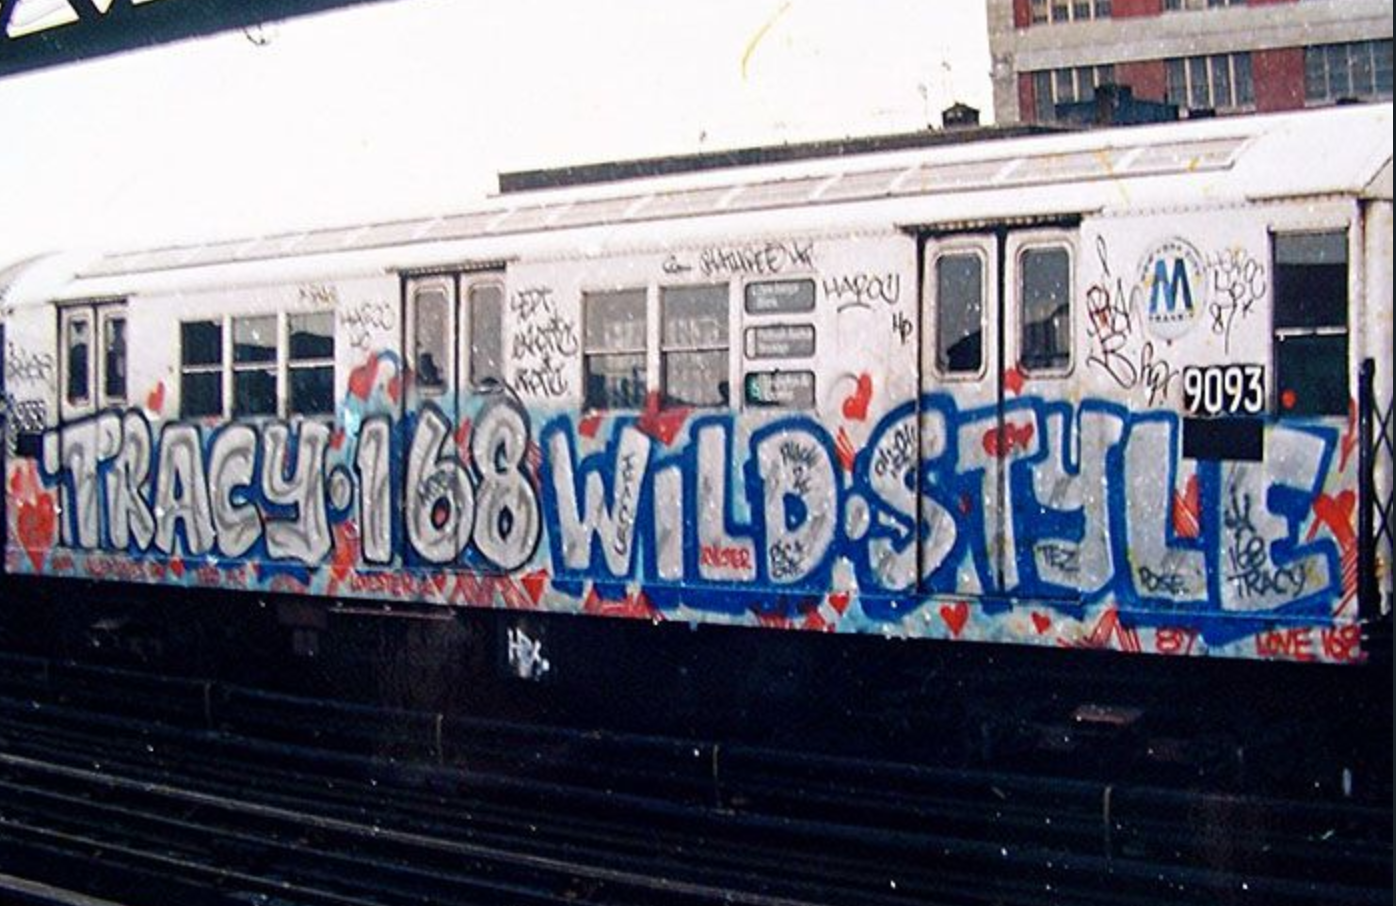 RIP TRACY 168, Wild Style Graffiti Titan